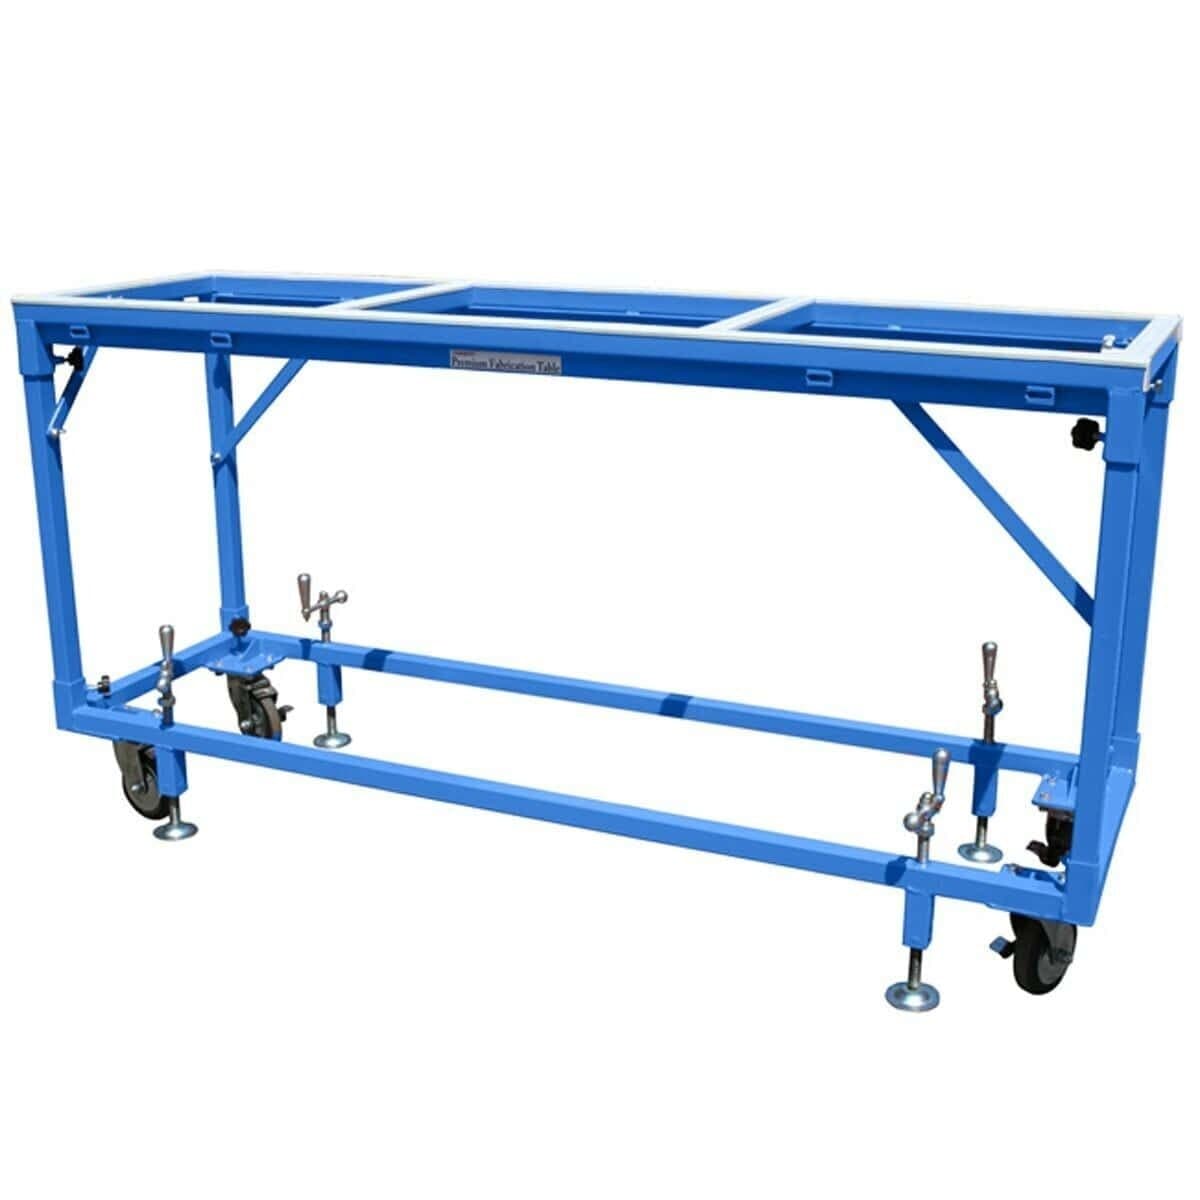 Groves Heavy-Duty Fabrication Table – TSC